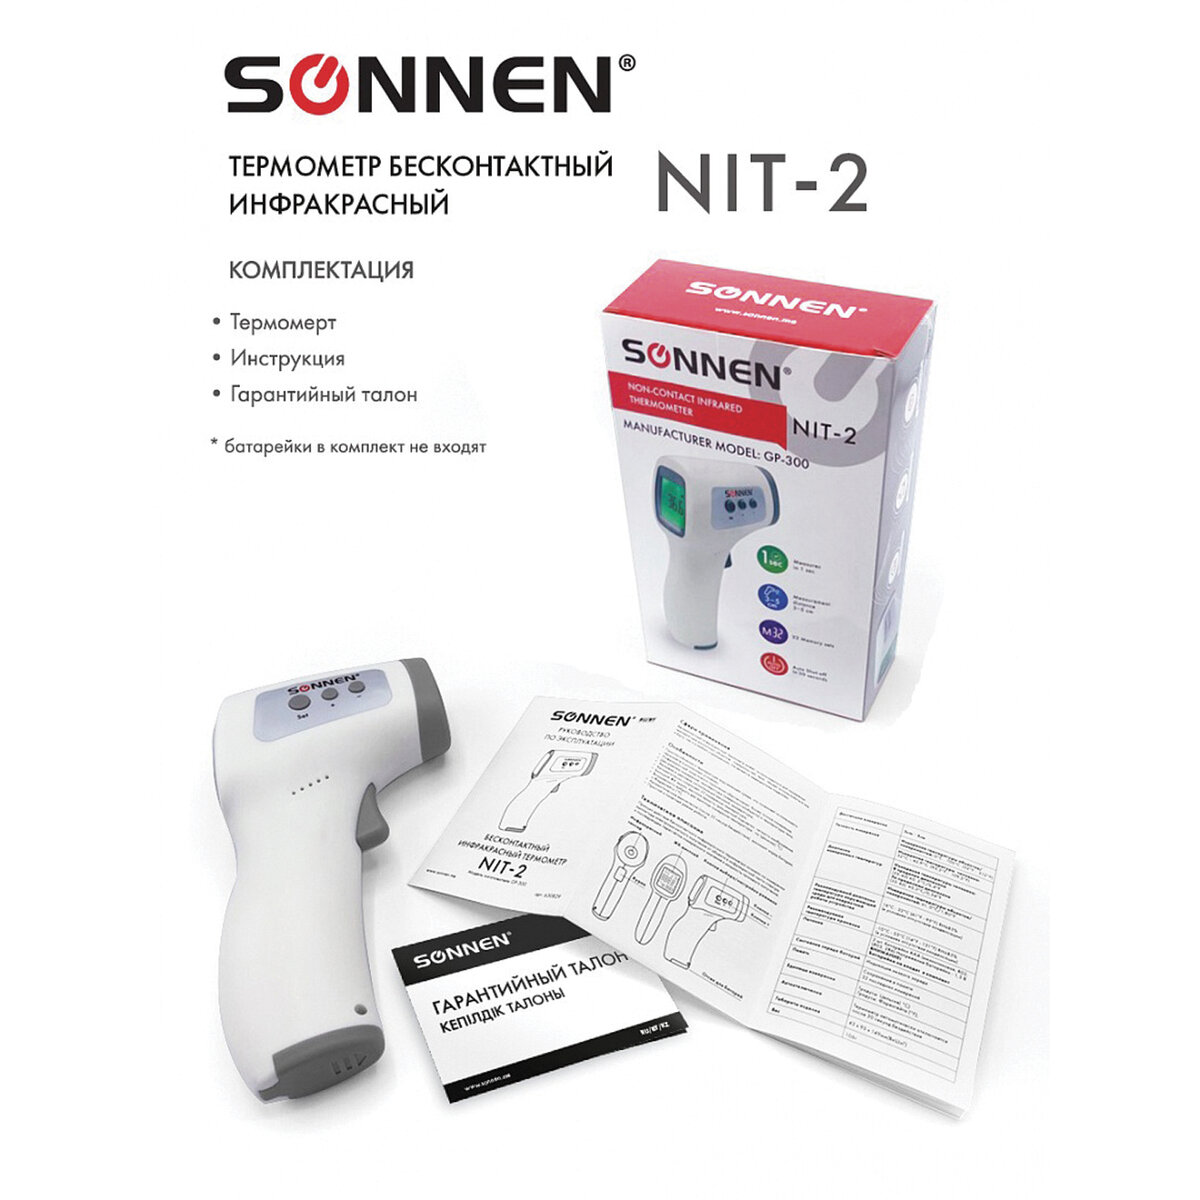 Термометр Sonnen бесконтактный инфракрасный NIT-2 GP-300 электронный - фото 6